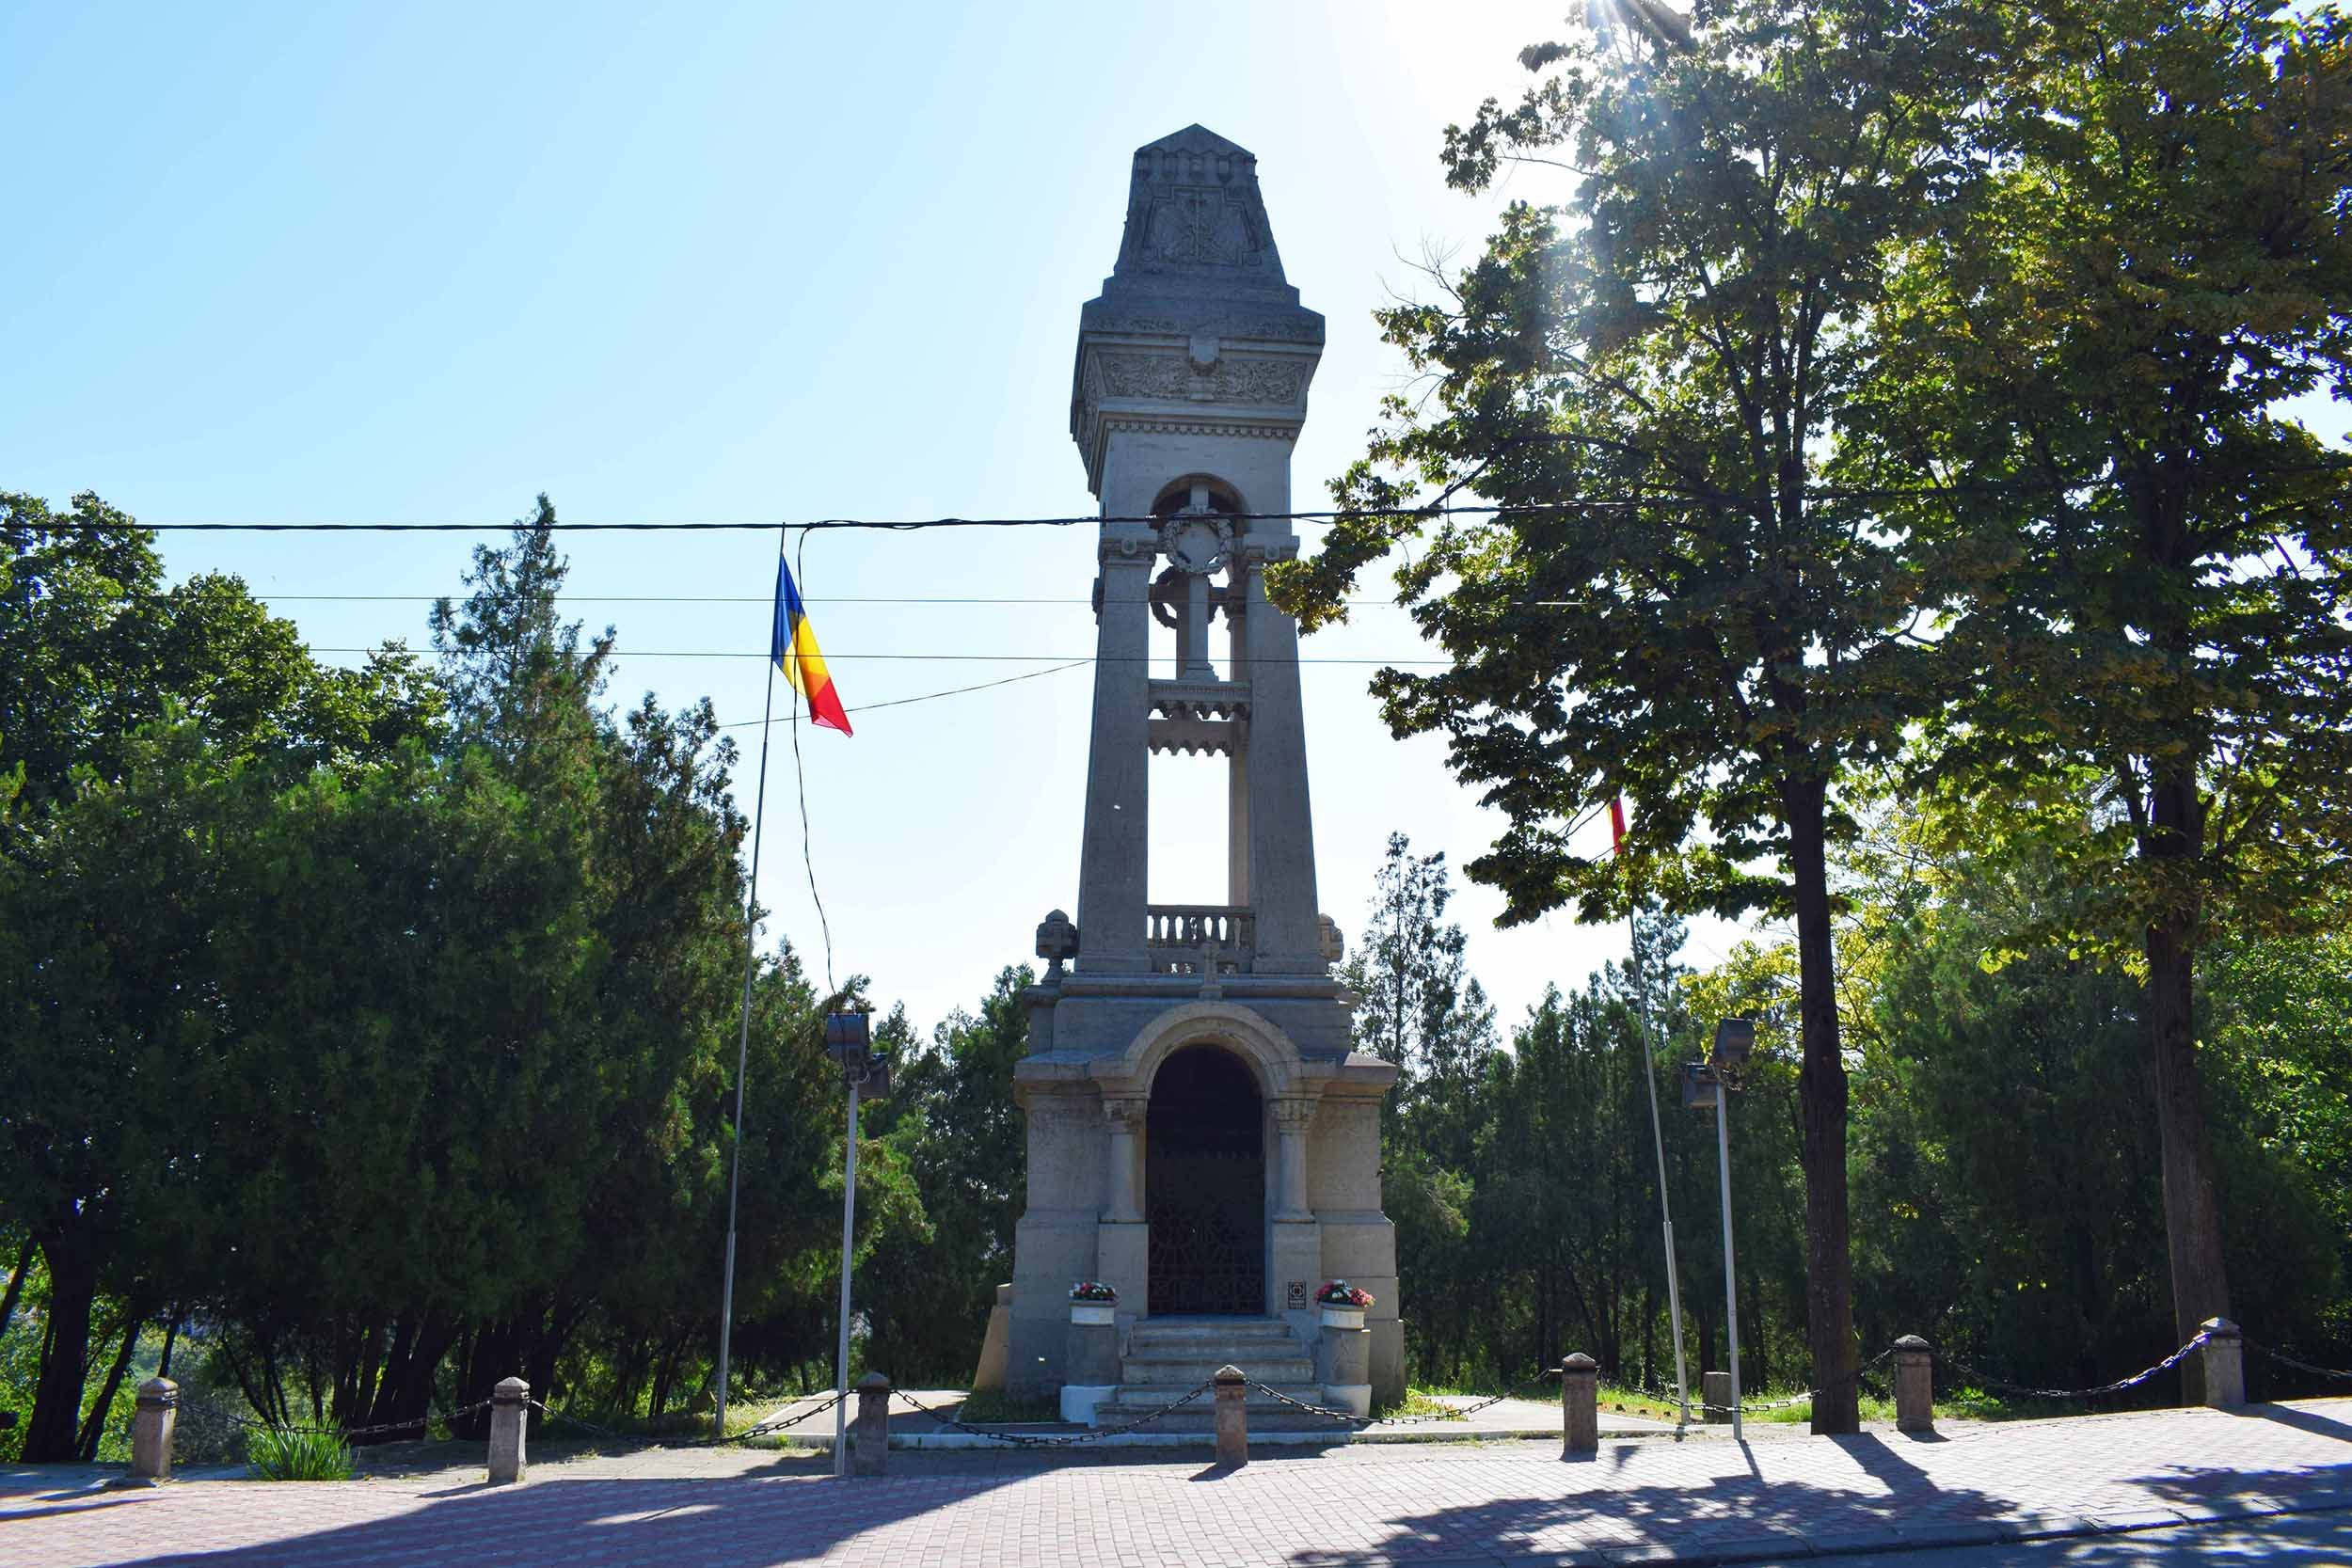  S-a terminat reabilitarea monumentului din Galata proiectat de Henri Coandă